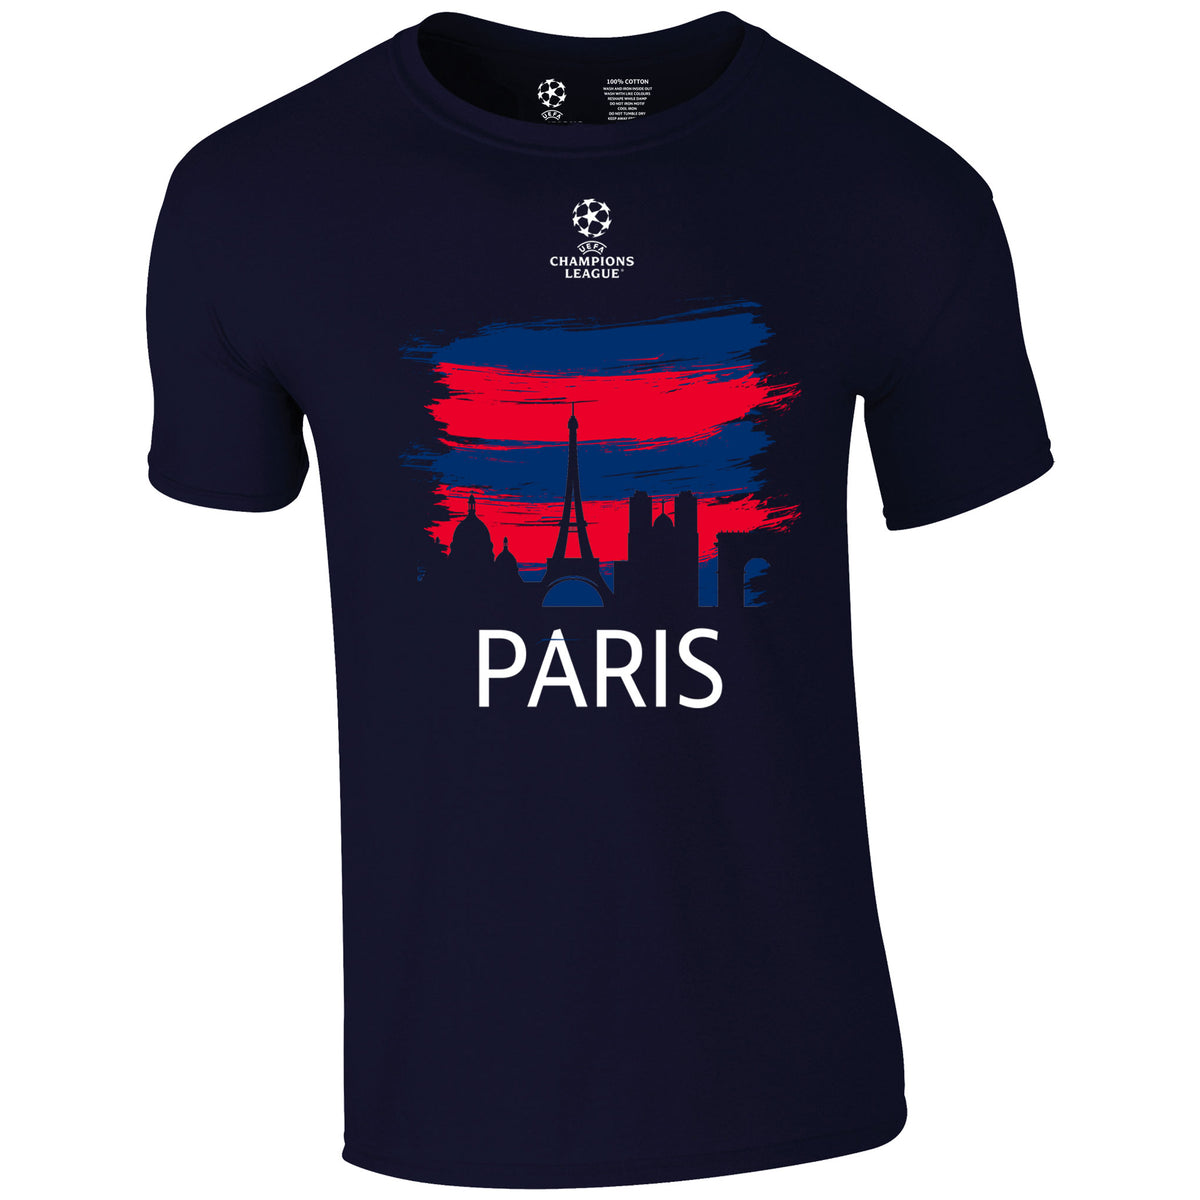 Champions League Paris City Painted Skyline T-Shirt Navy